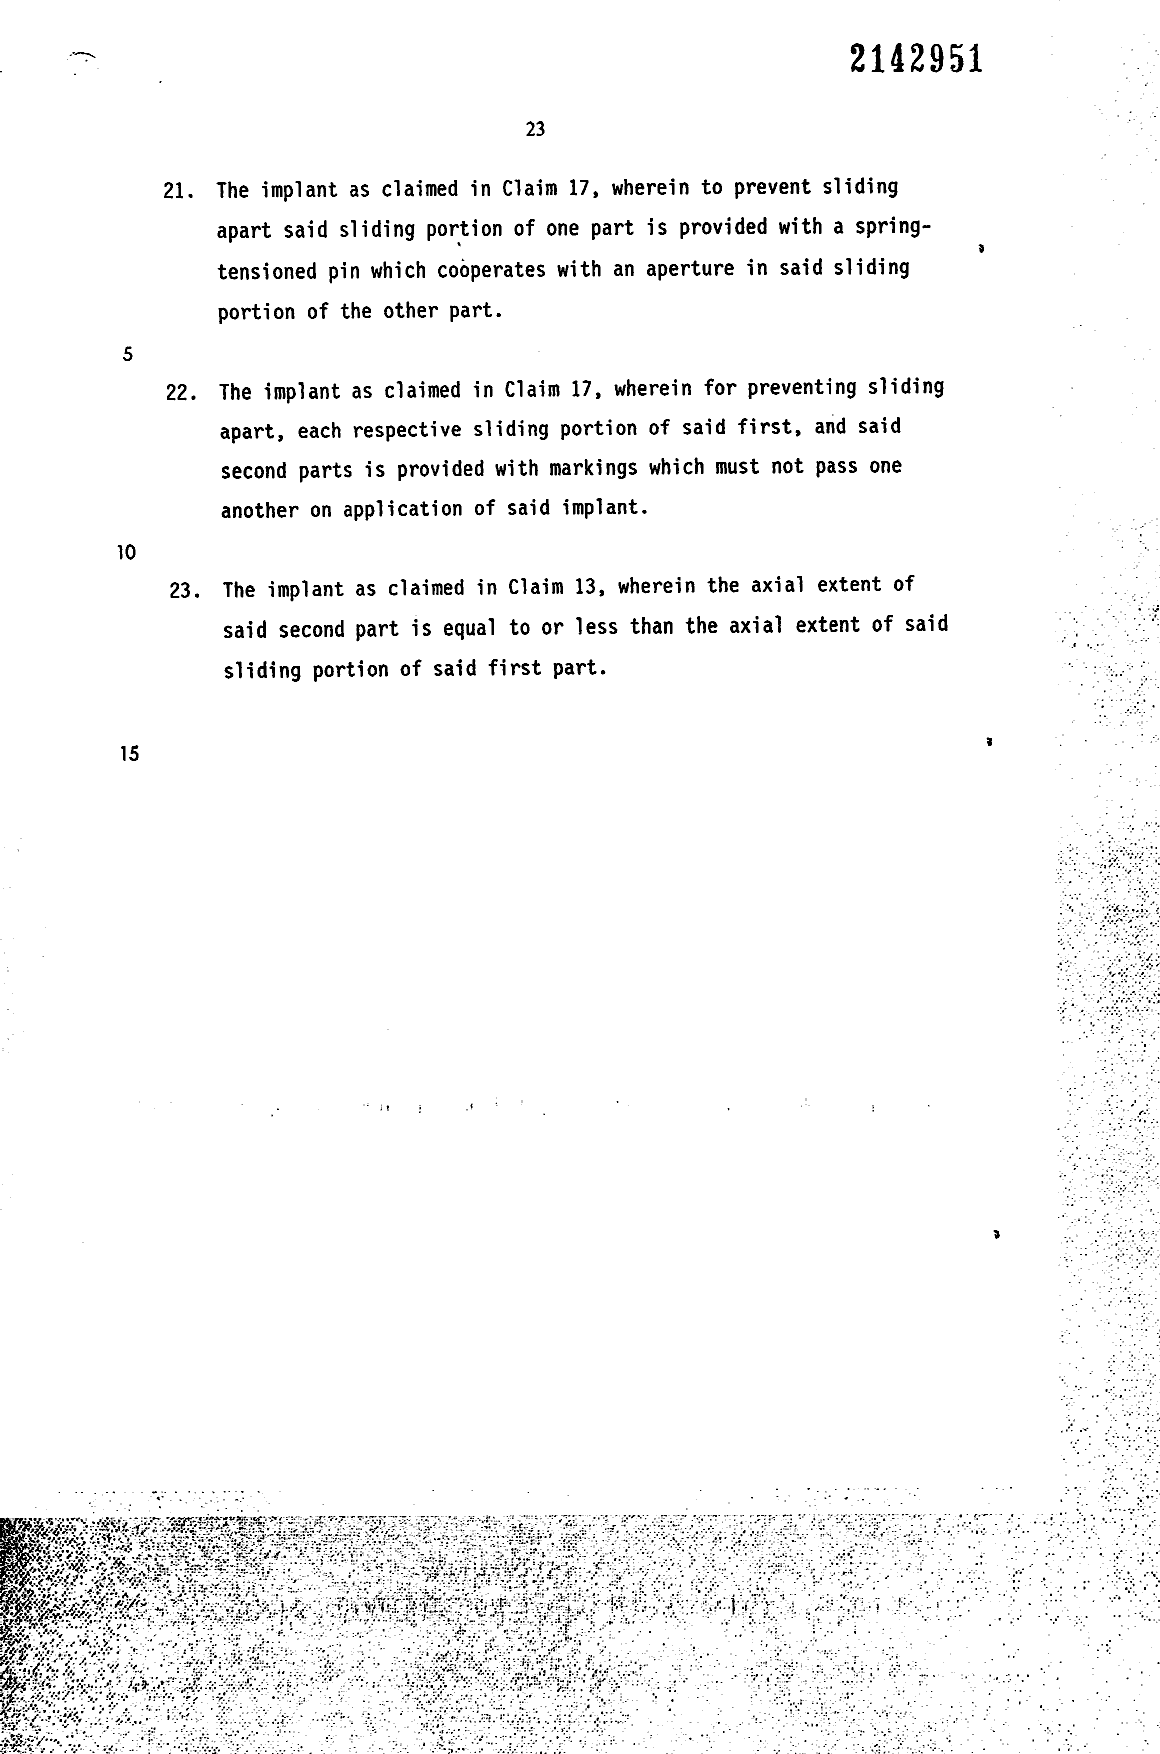 Document de brevet canadien 2142951. Revendications 19941216. Image 6 de 6